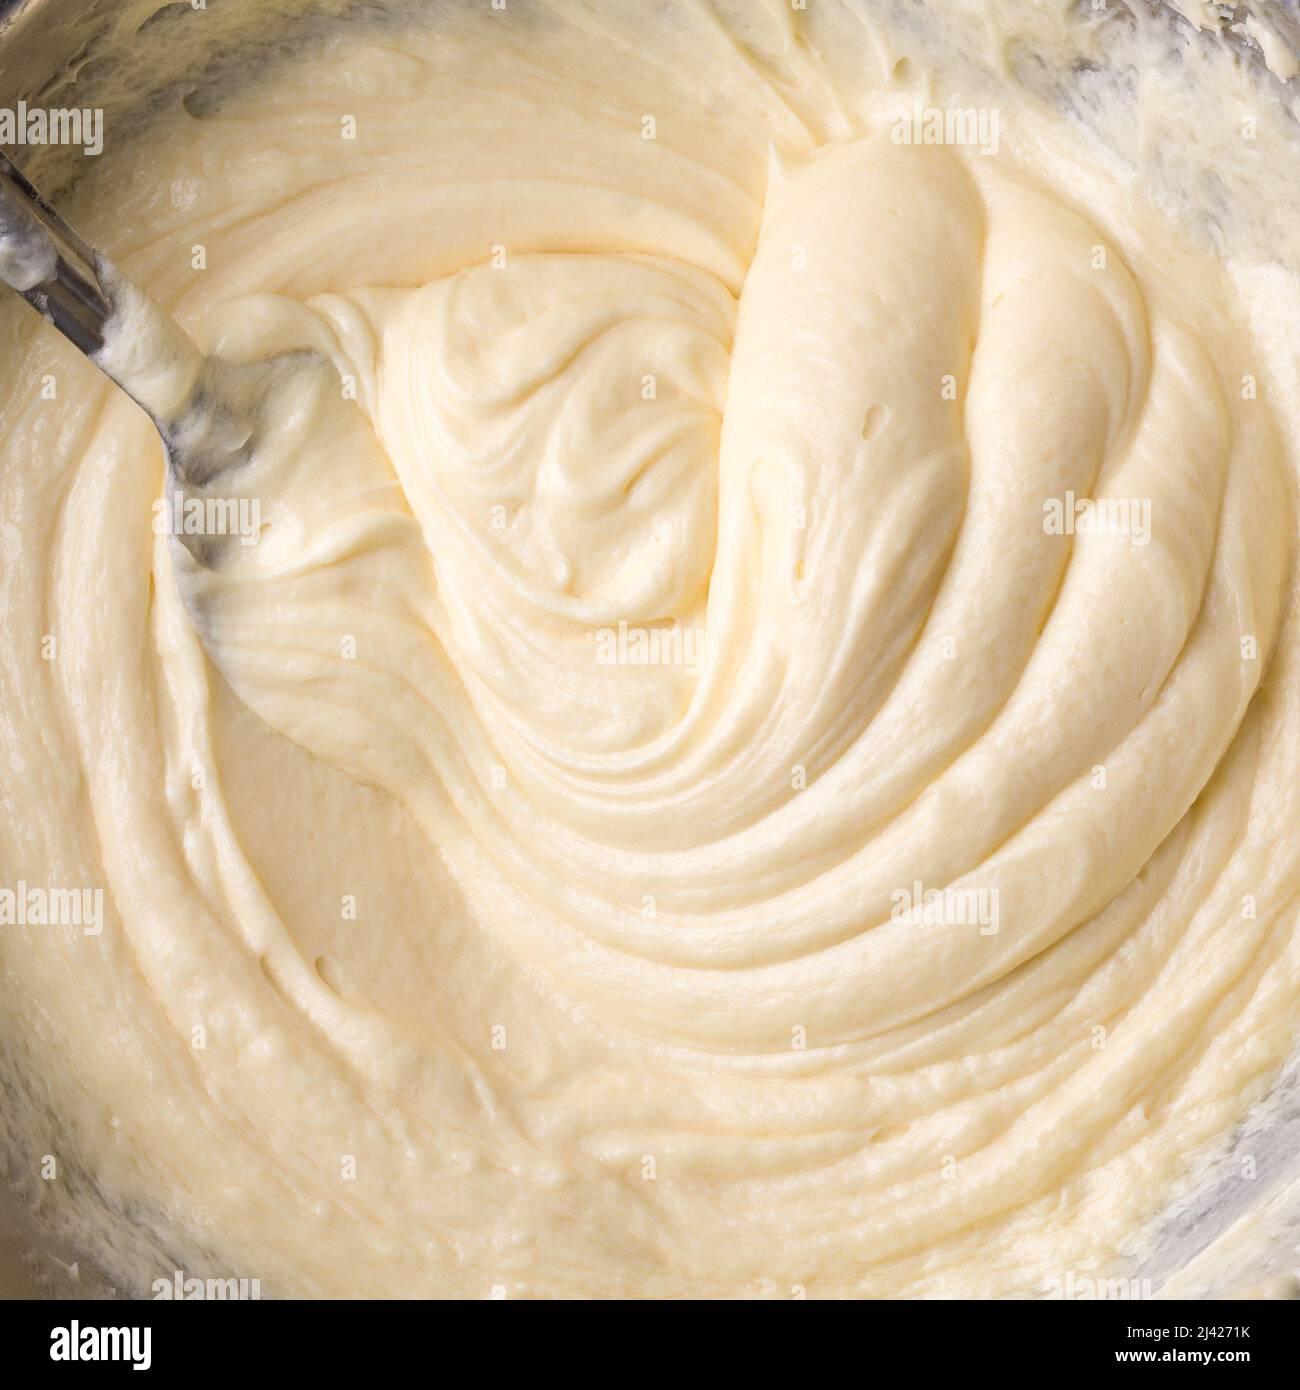 crema di burro bianca, sbattendo l'impasto con un cucchiaio, panna torta primo piano, preso dall'alto, cibo di fondo Foto Stock